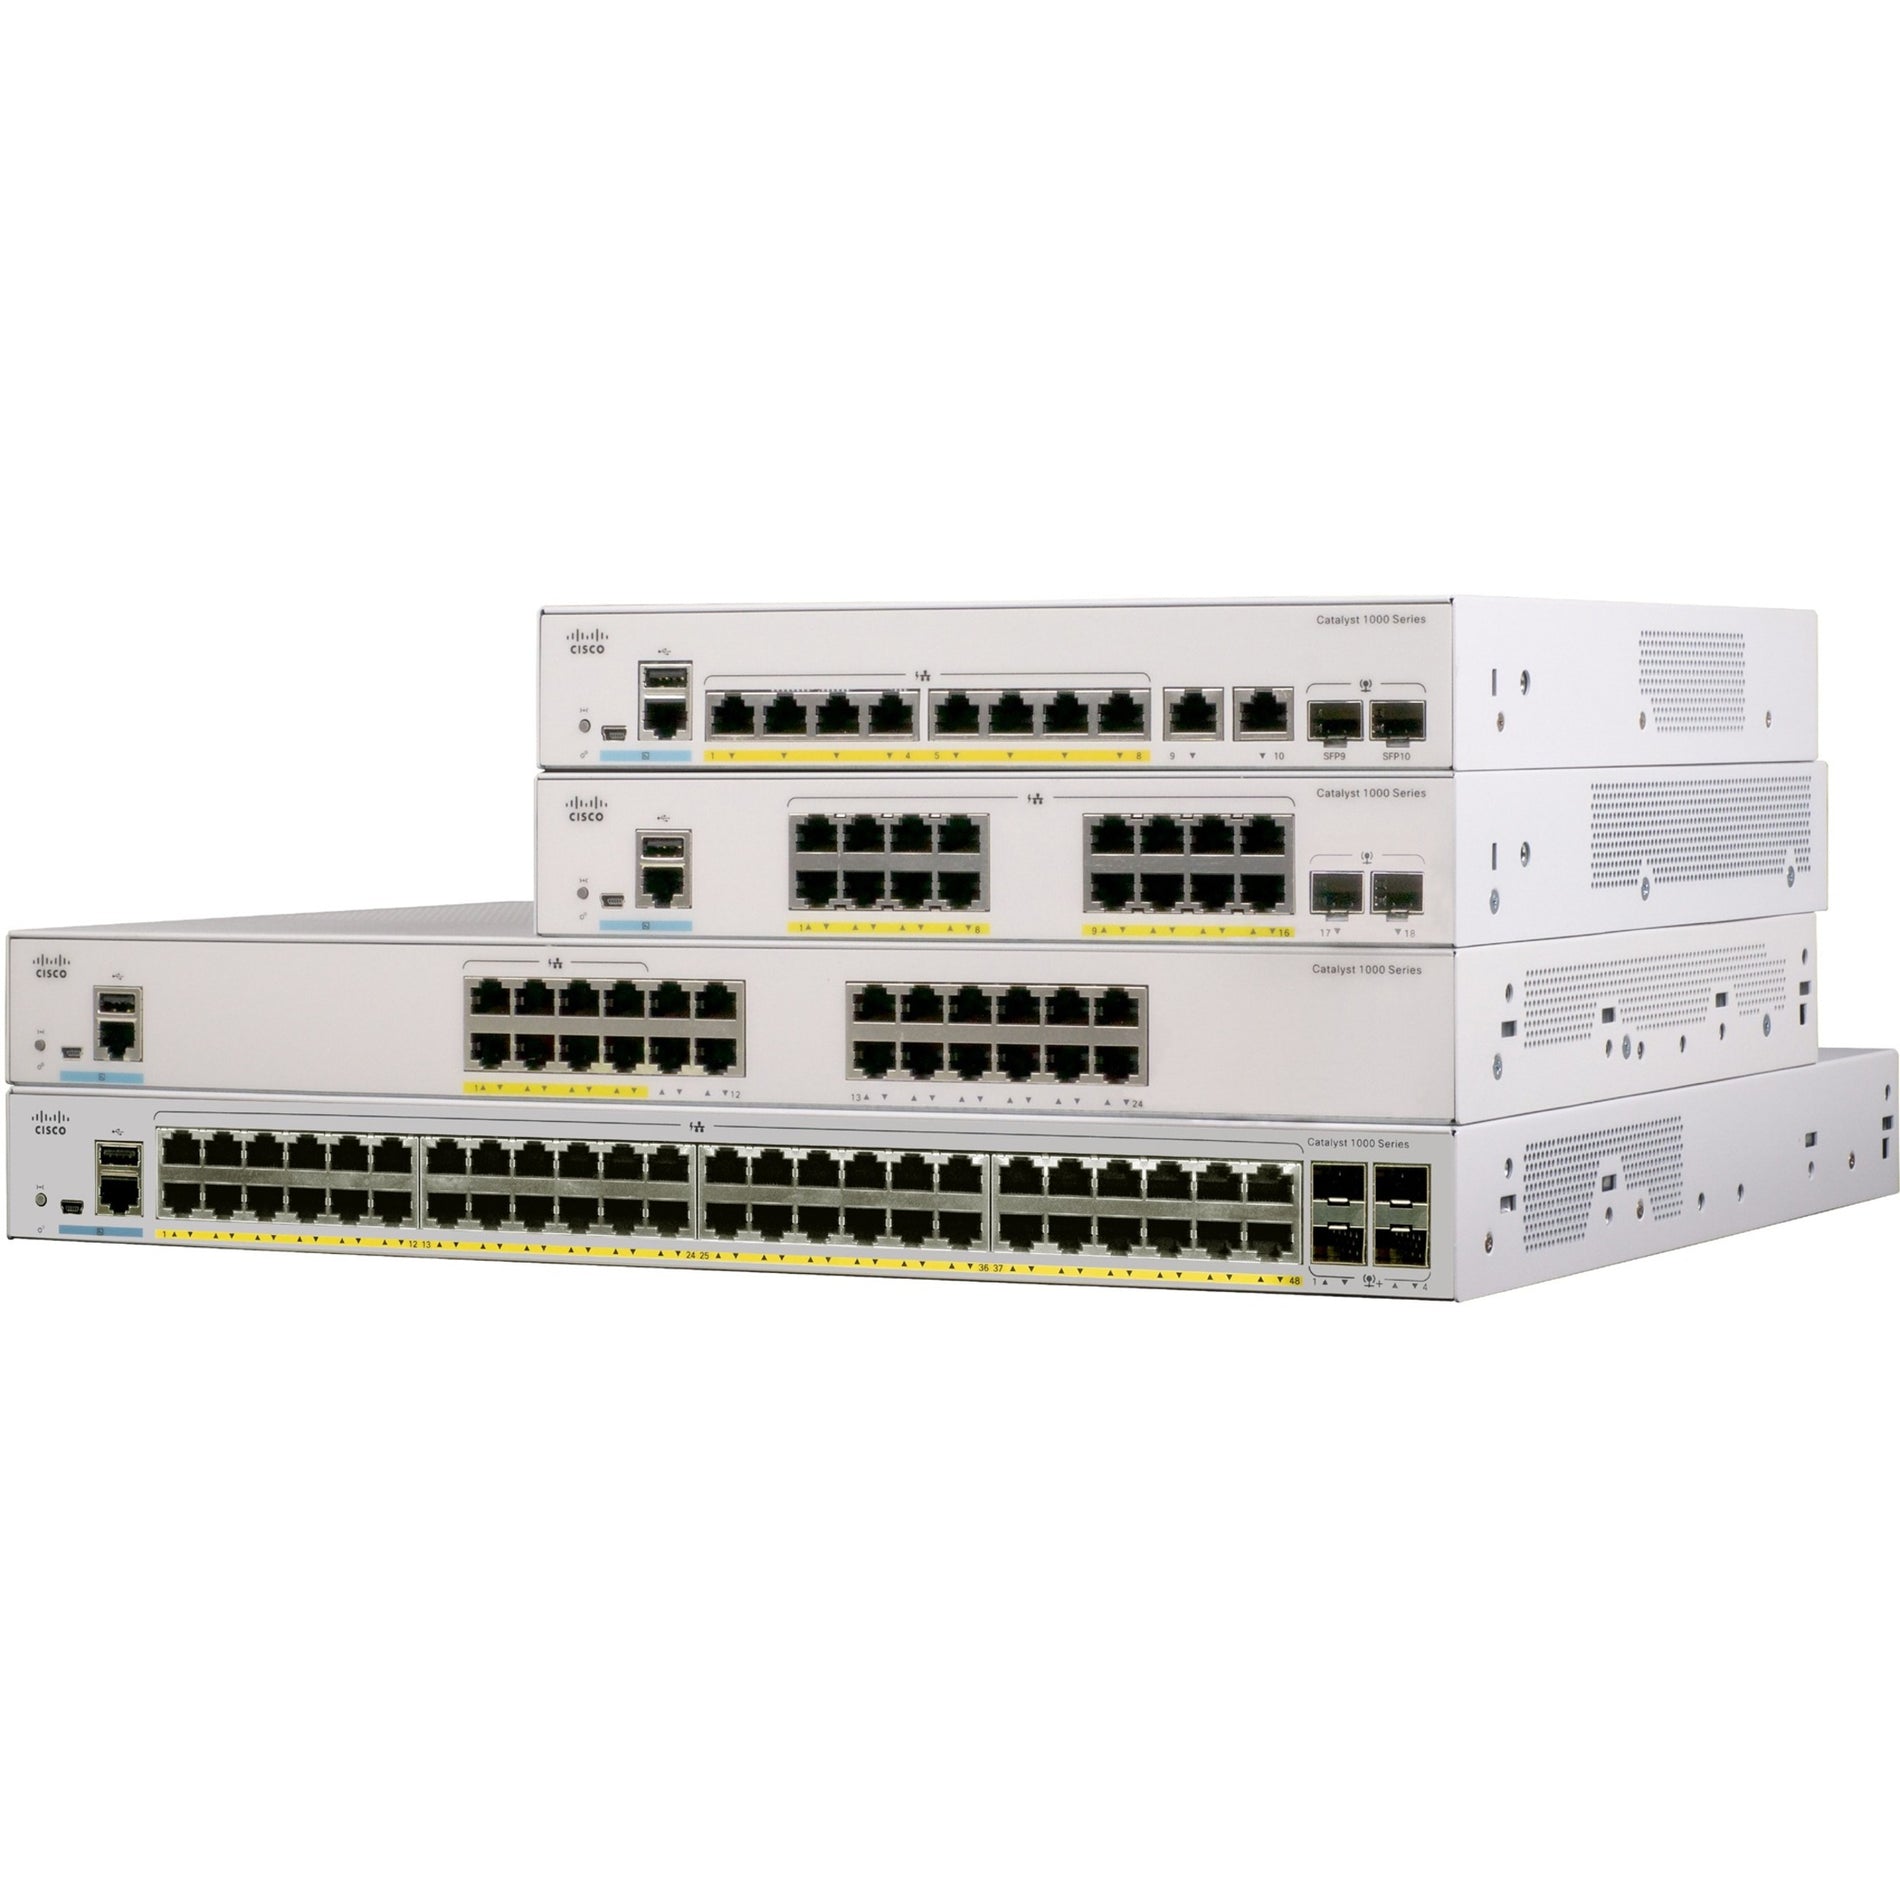 Cisco C1000-16FP-2G-L Catalyst C1000-16FP Ethernet Switch, 16 Gigabit Ethernet PoE+, 2 Gigabit Ethernet Uplink